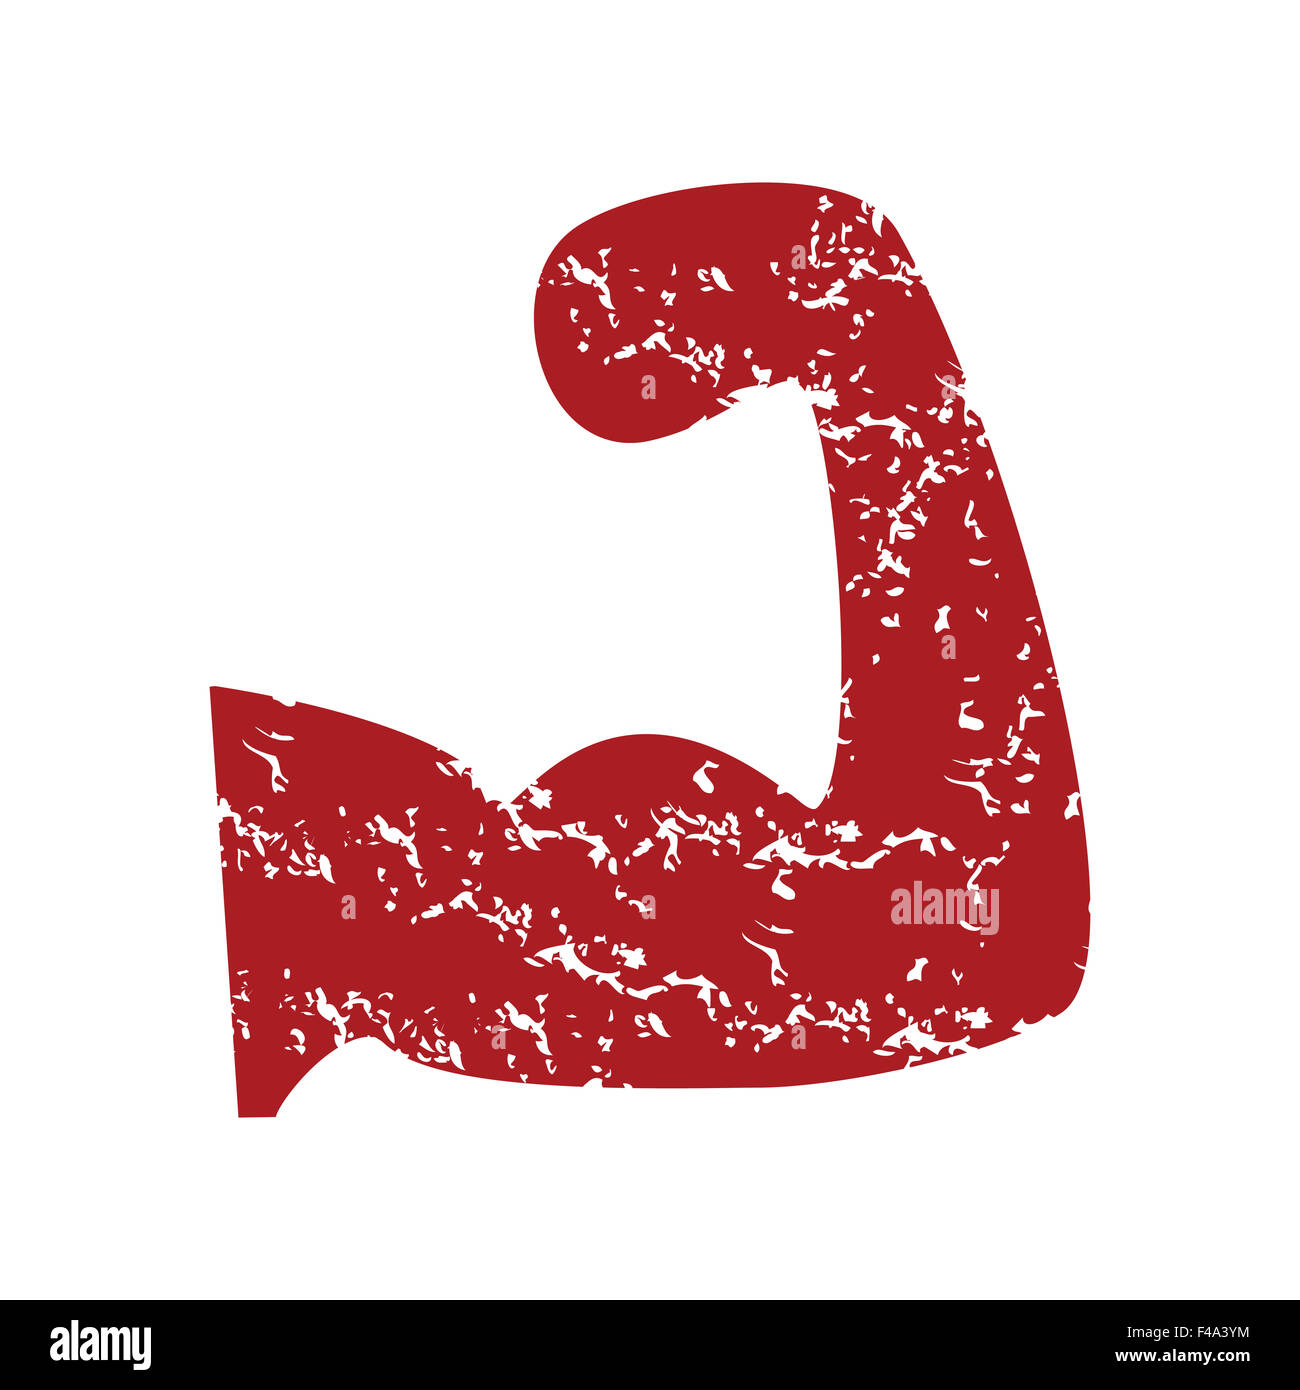 Red grunge brawn logo Stock Photo